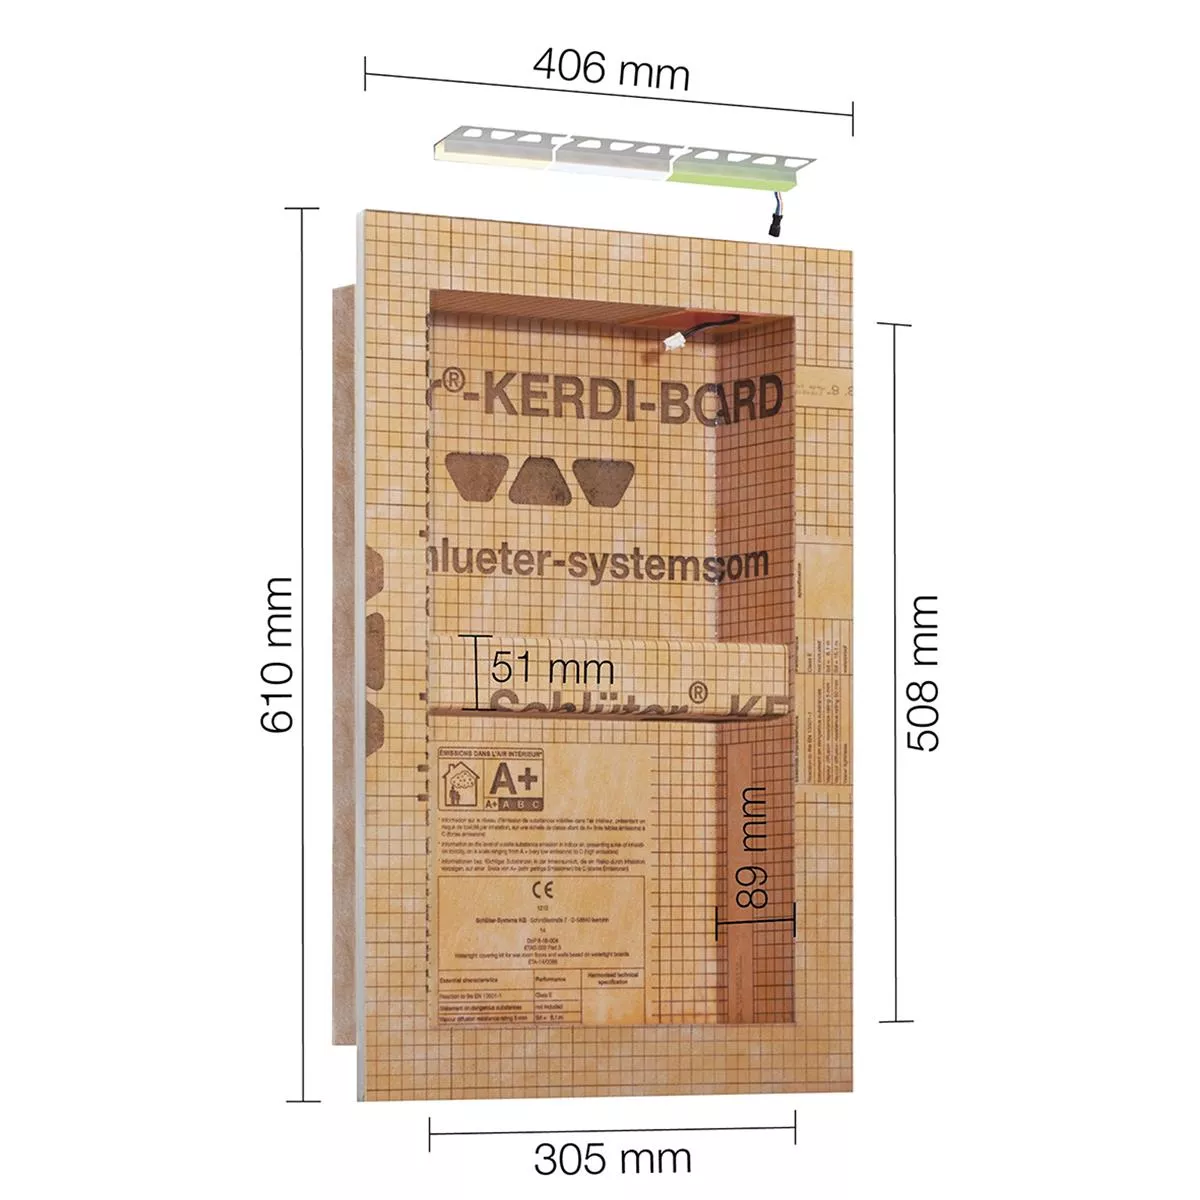 Schlüter Kerdi Board NLT nisset LED-verlichting warm wit 30,5x50,8x0,89 cm